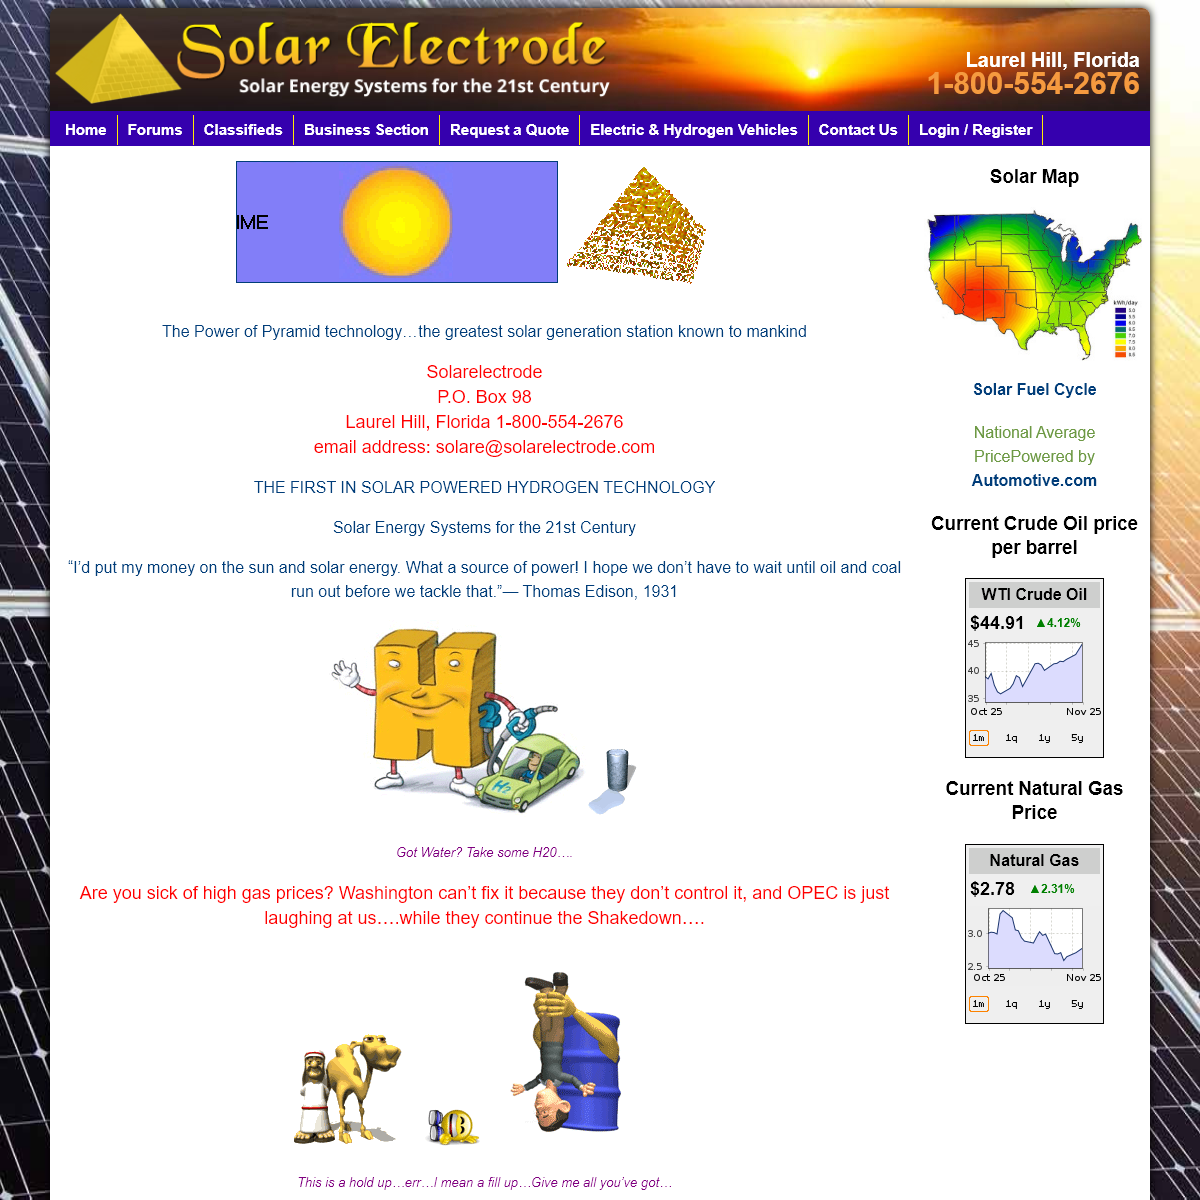 A complete backup of solarelectrode.com